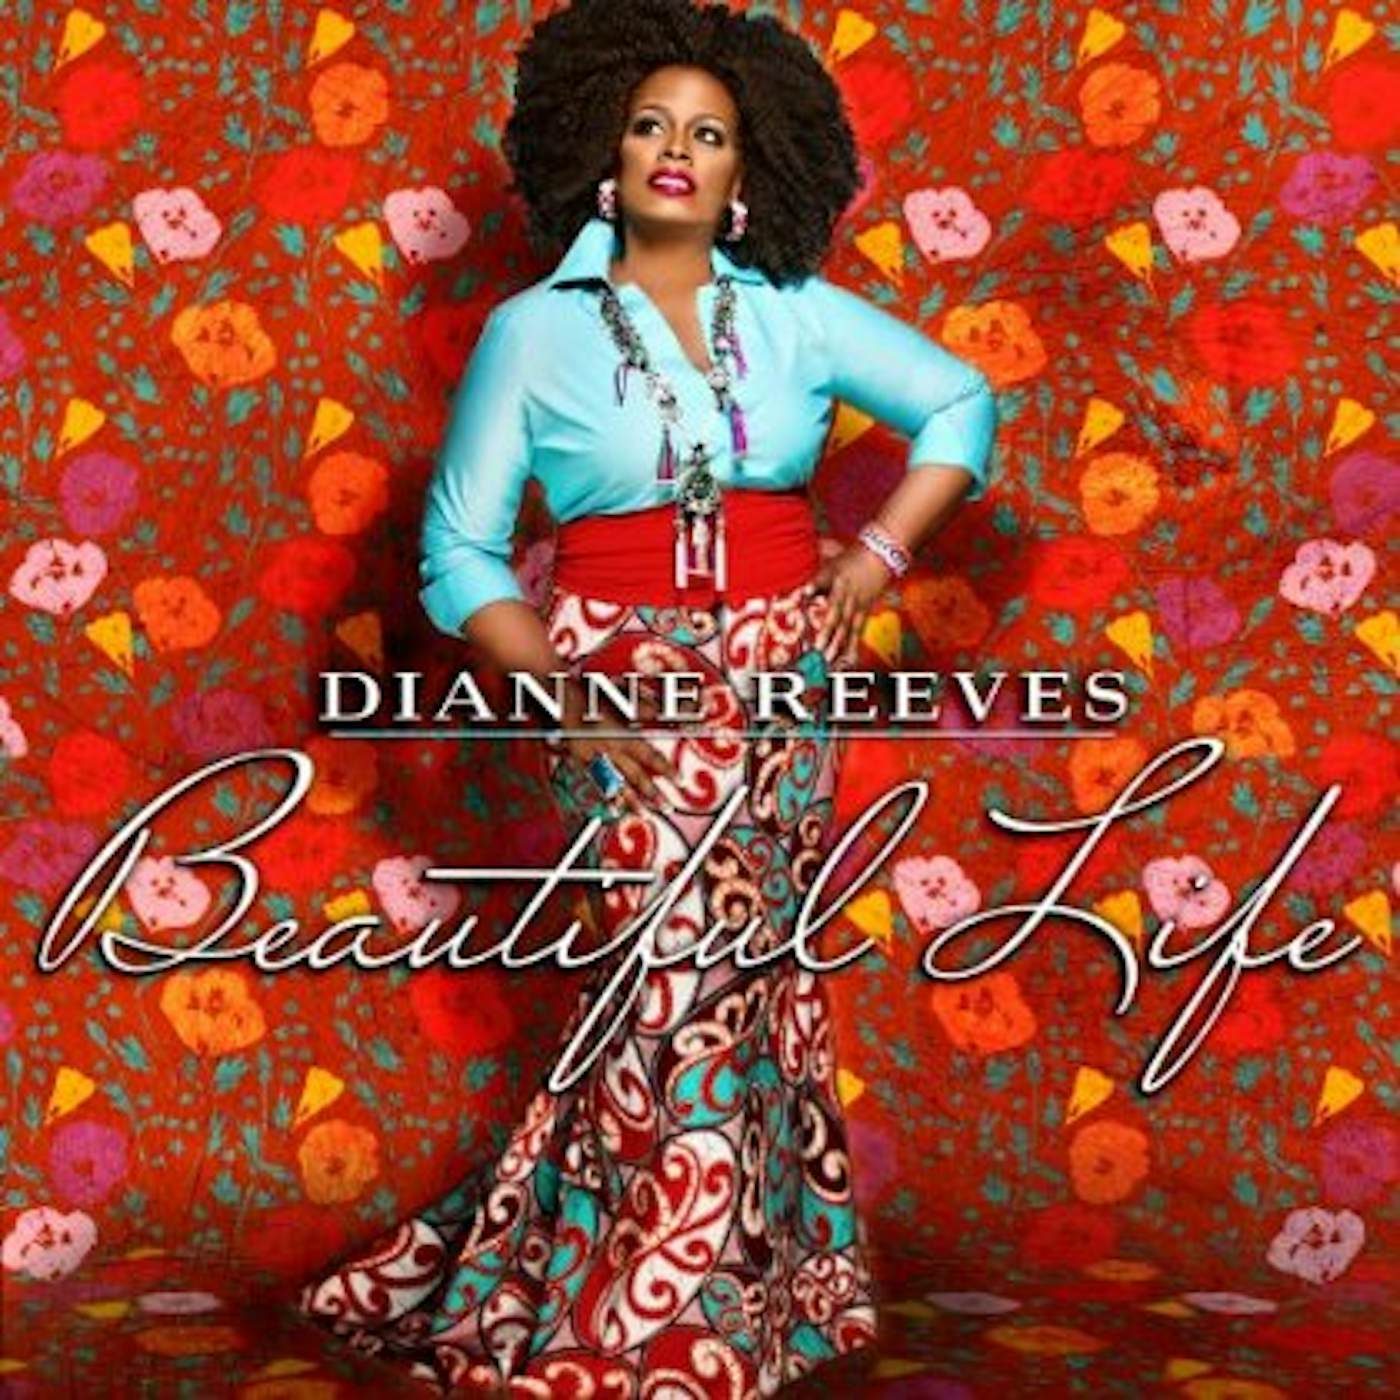 Diane Reeves BEAUTIFUL LIFE CD